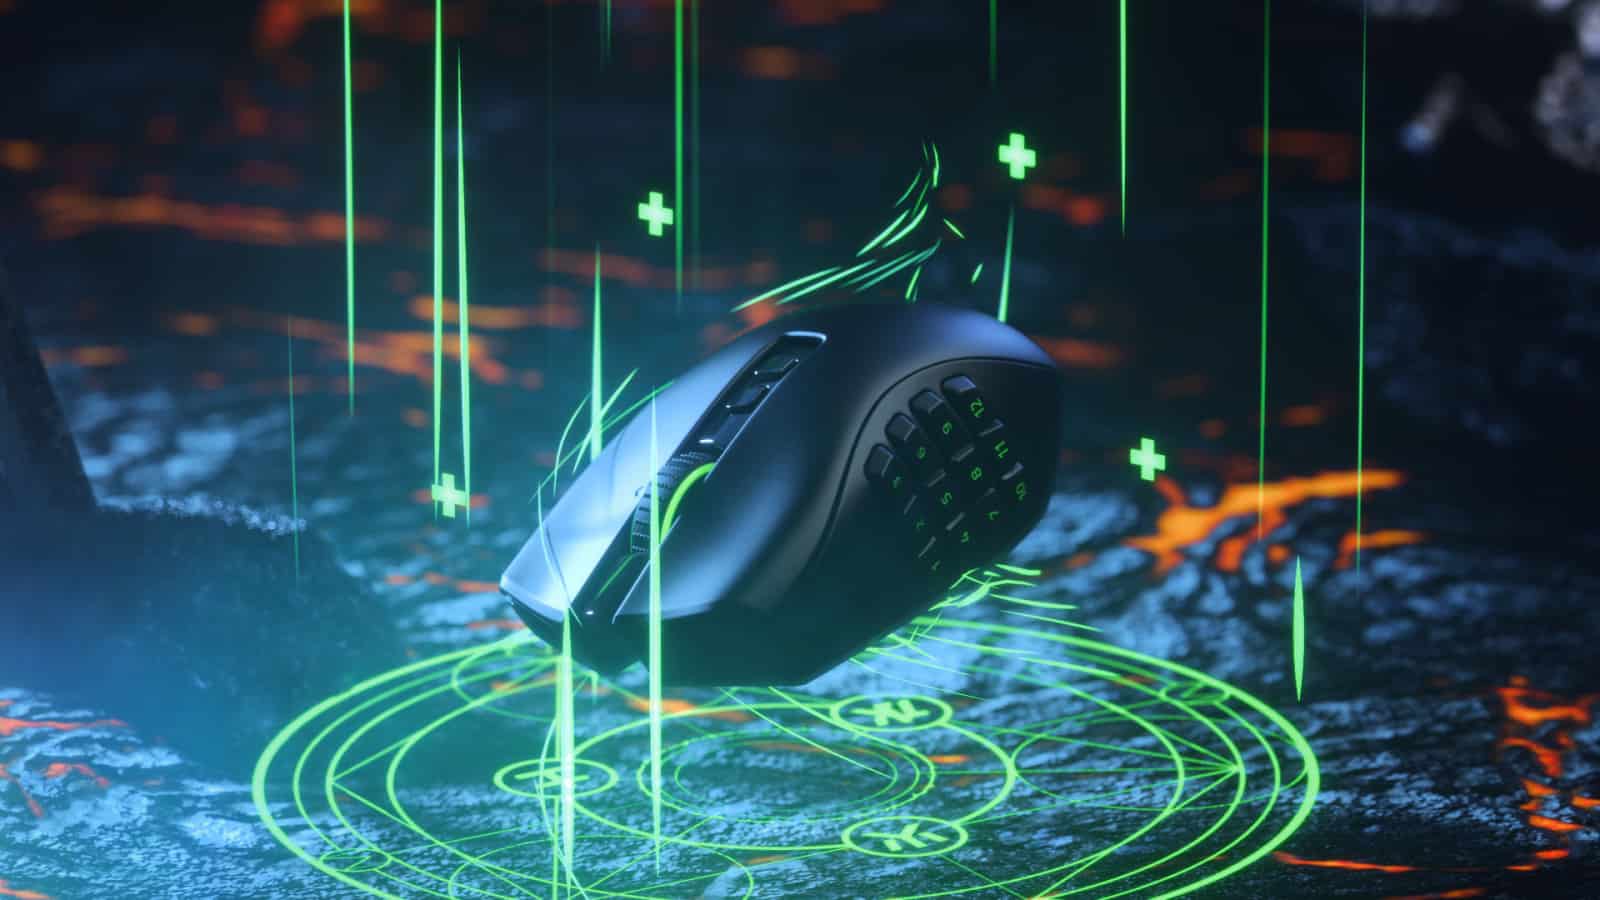 Razer Naga Pro Wireless Gaming Mouse 1